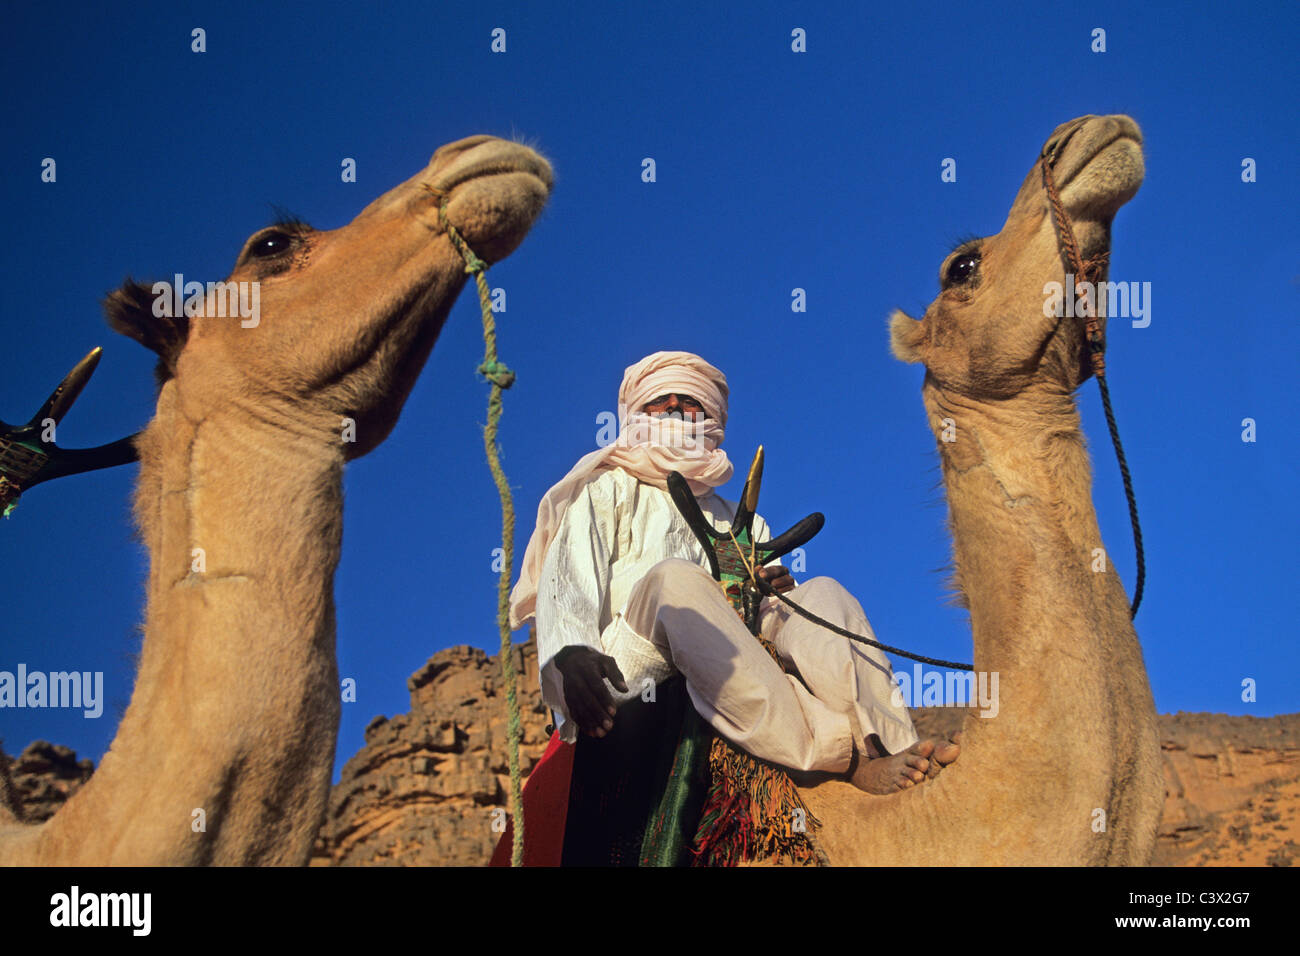 L'Algérie, Tamanrasset. L'homme de tribu touareg sur camel. Désert du Sahara. Banque D'Images